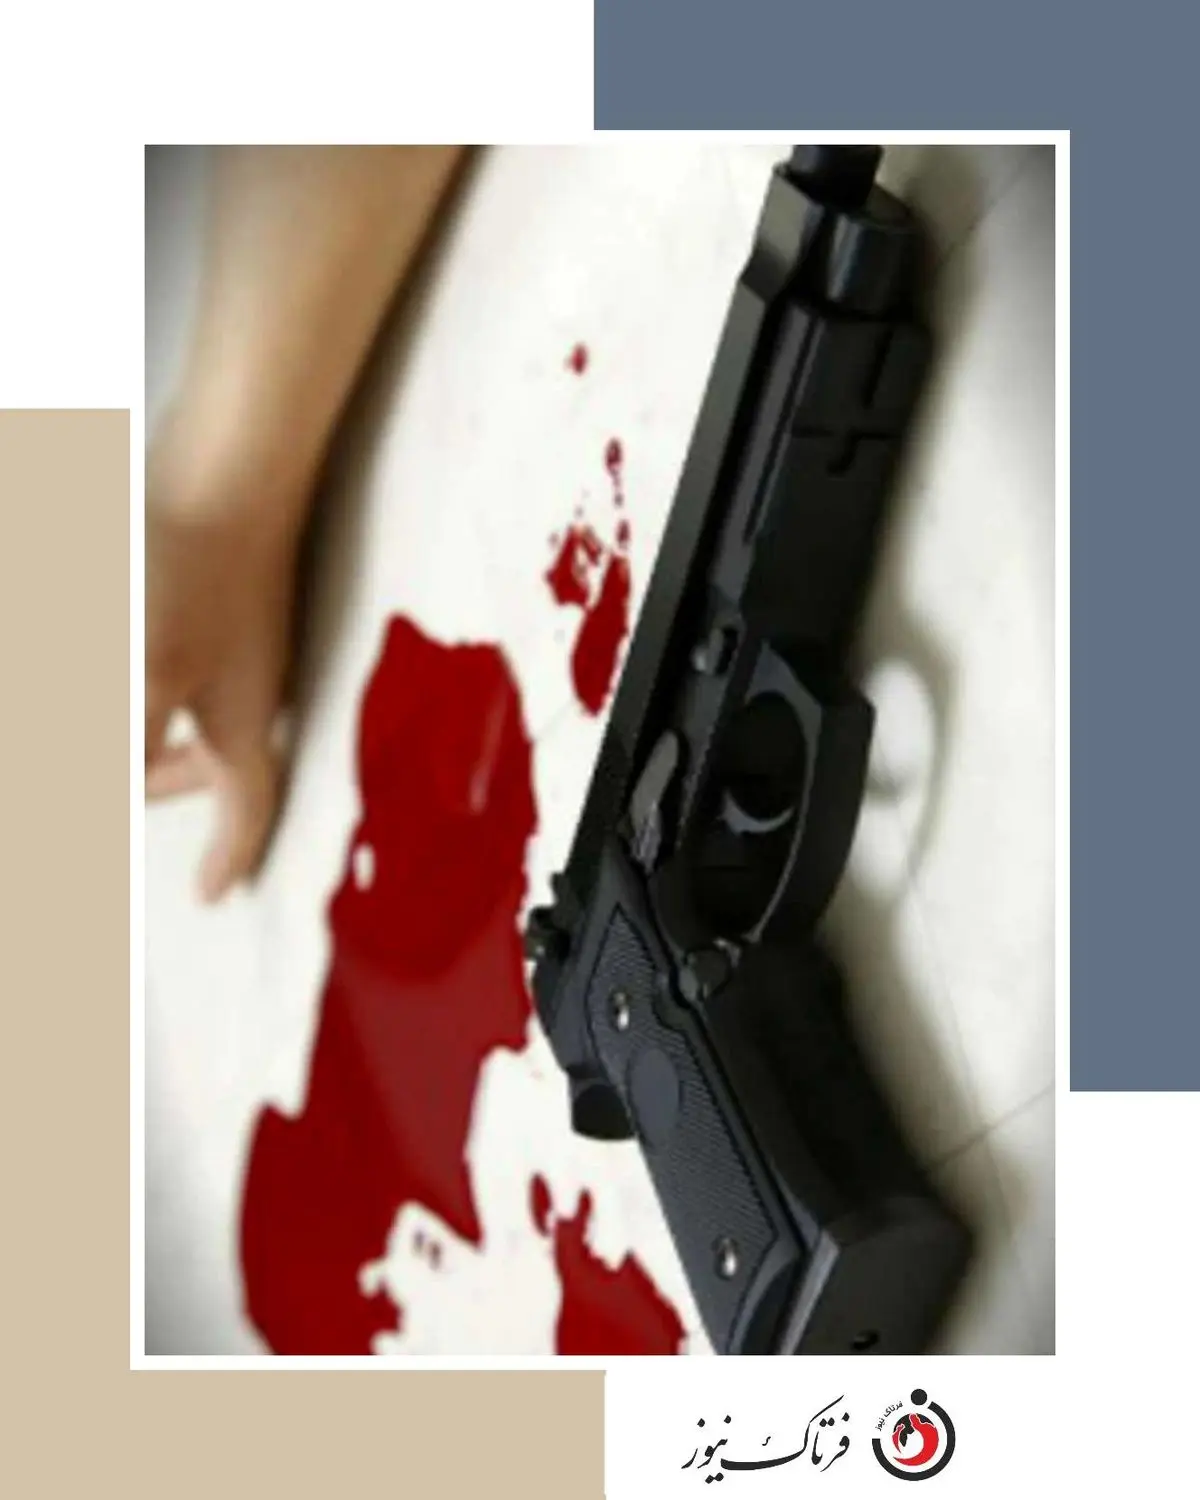 قتل مرد جوان با شلیک سارقان مسلح طلافروشی خانی آباد + عکس و جزییات
